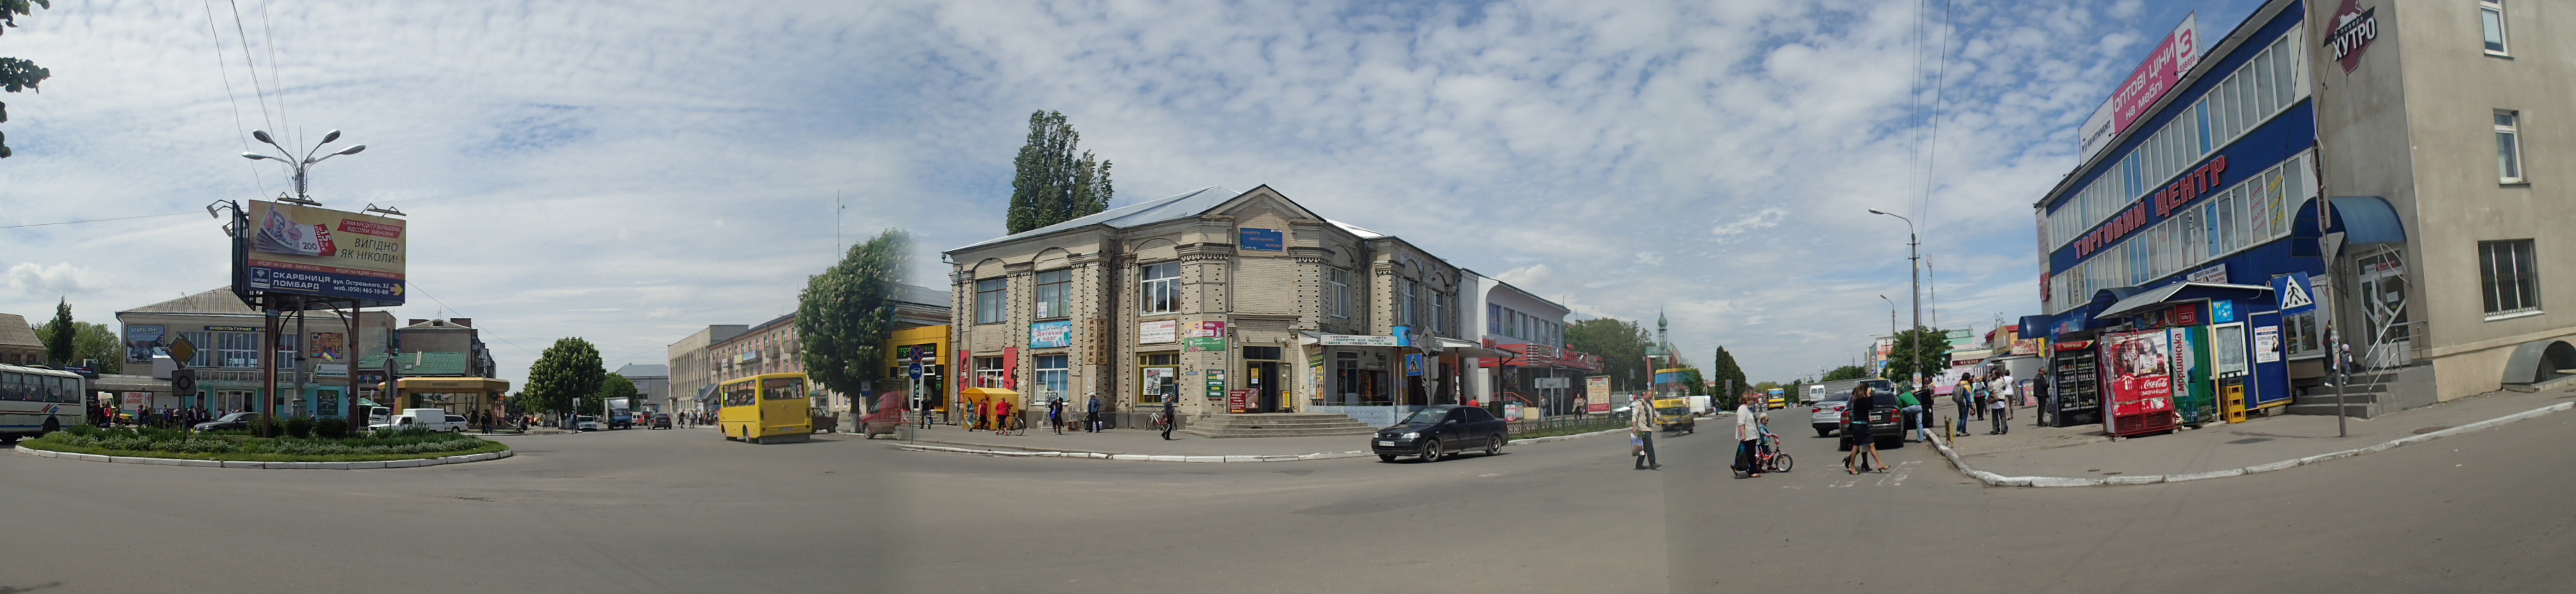 Stadscentrum van een willekeurige kleine stad in Oekraïne